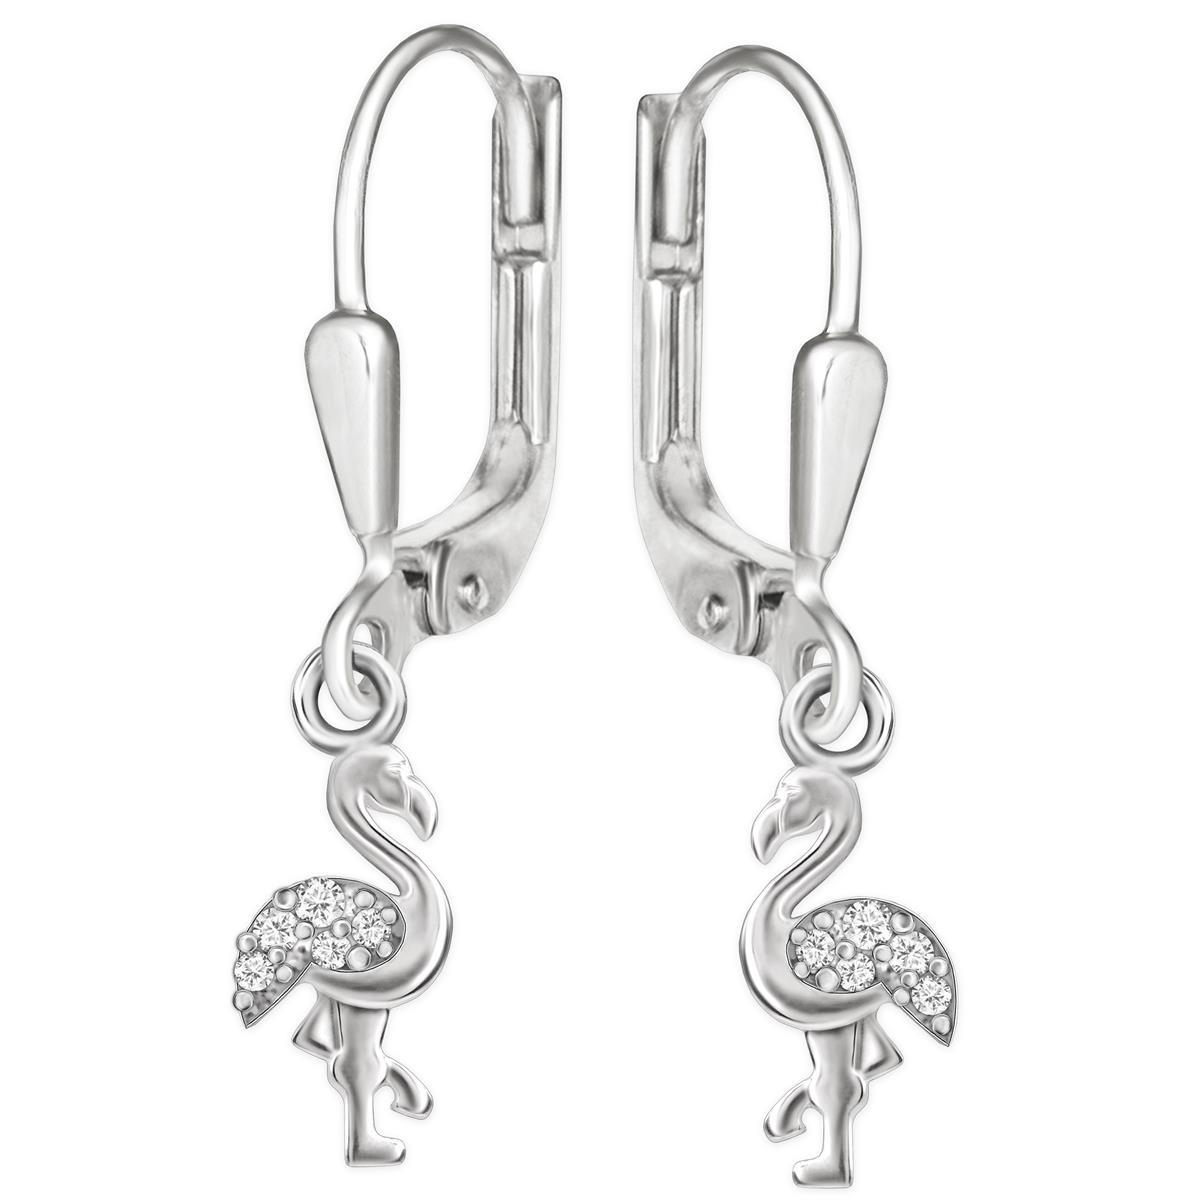 Silberne Ohrhänger Flamingo mit Zirkonias auf Flügel glänzend Sterling Silber 925